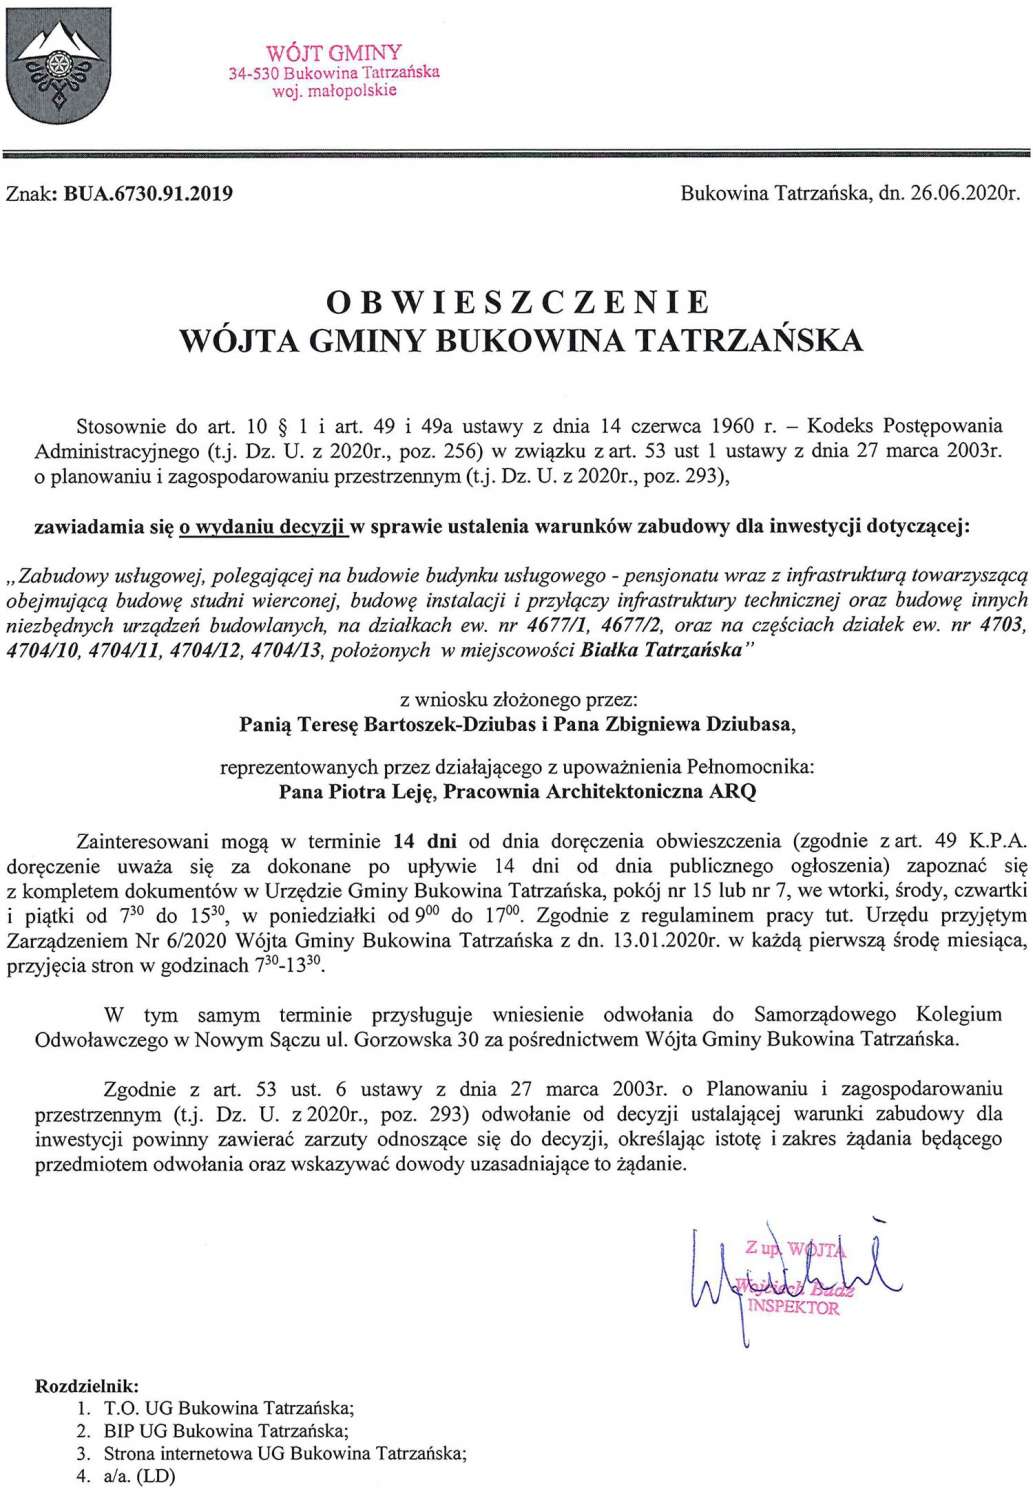 Obwieszczenie Wójta Gminy Bukowina Tatrzańska BUA 6730.91.2019